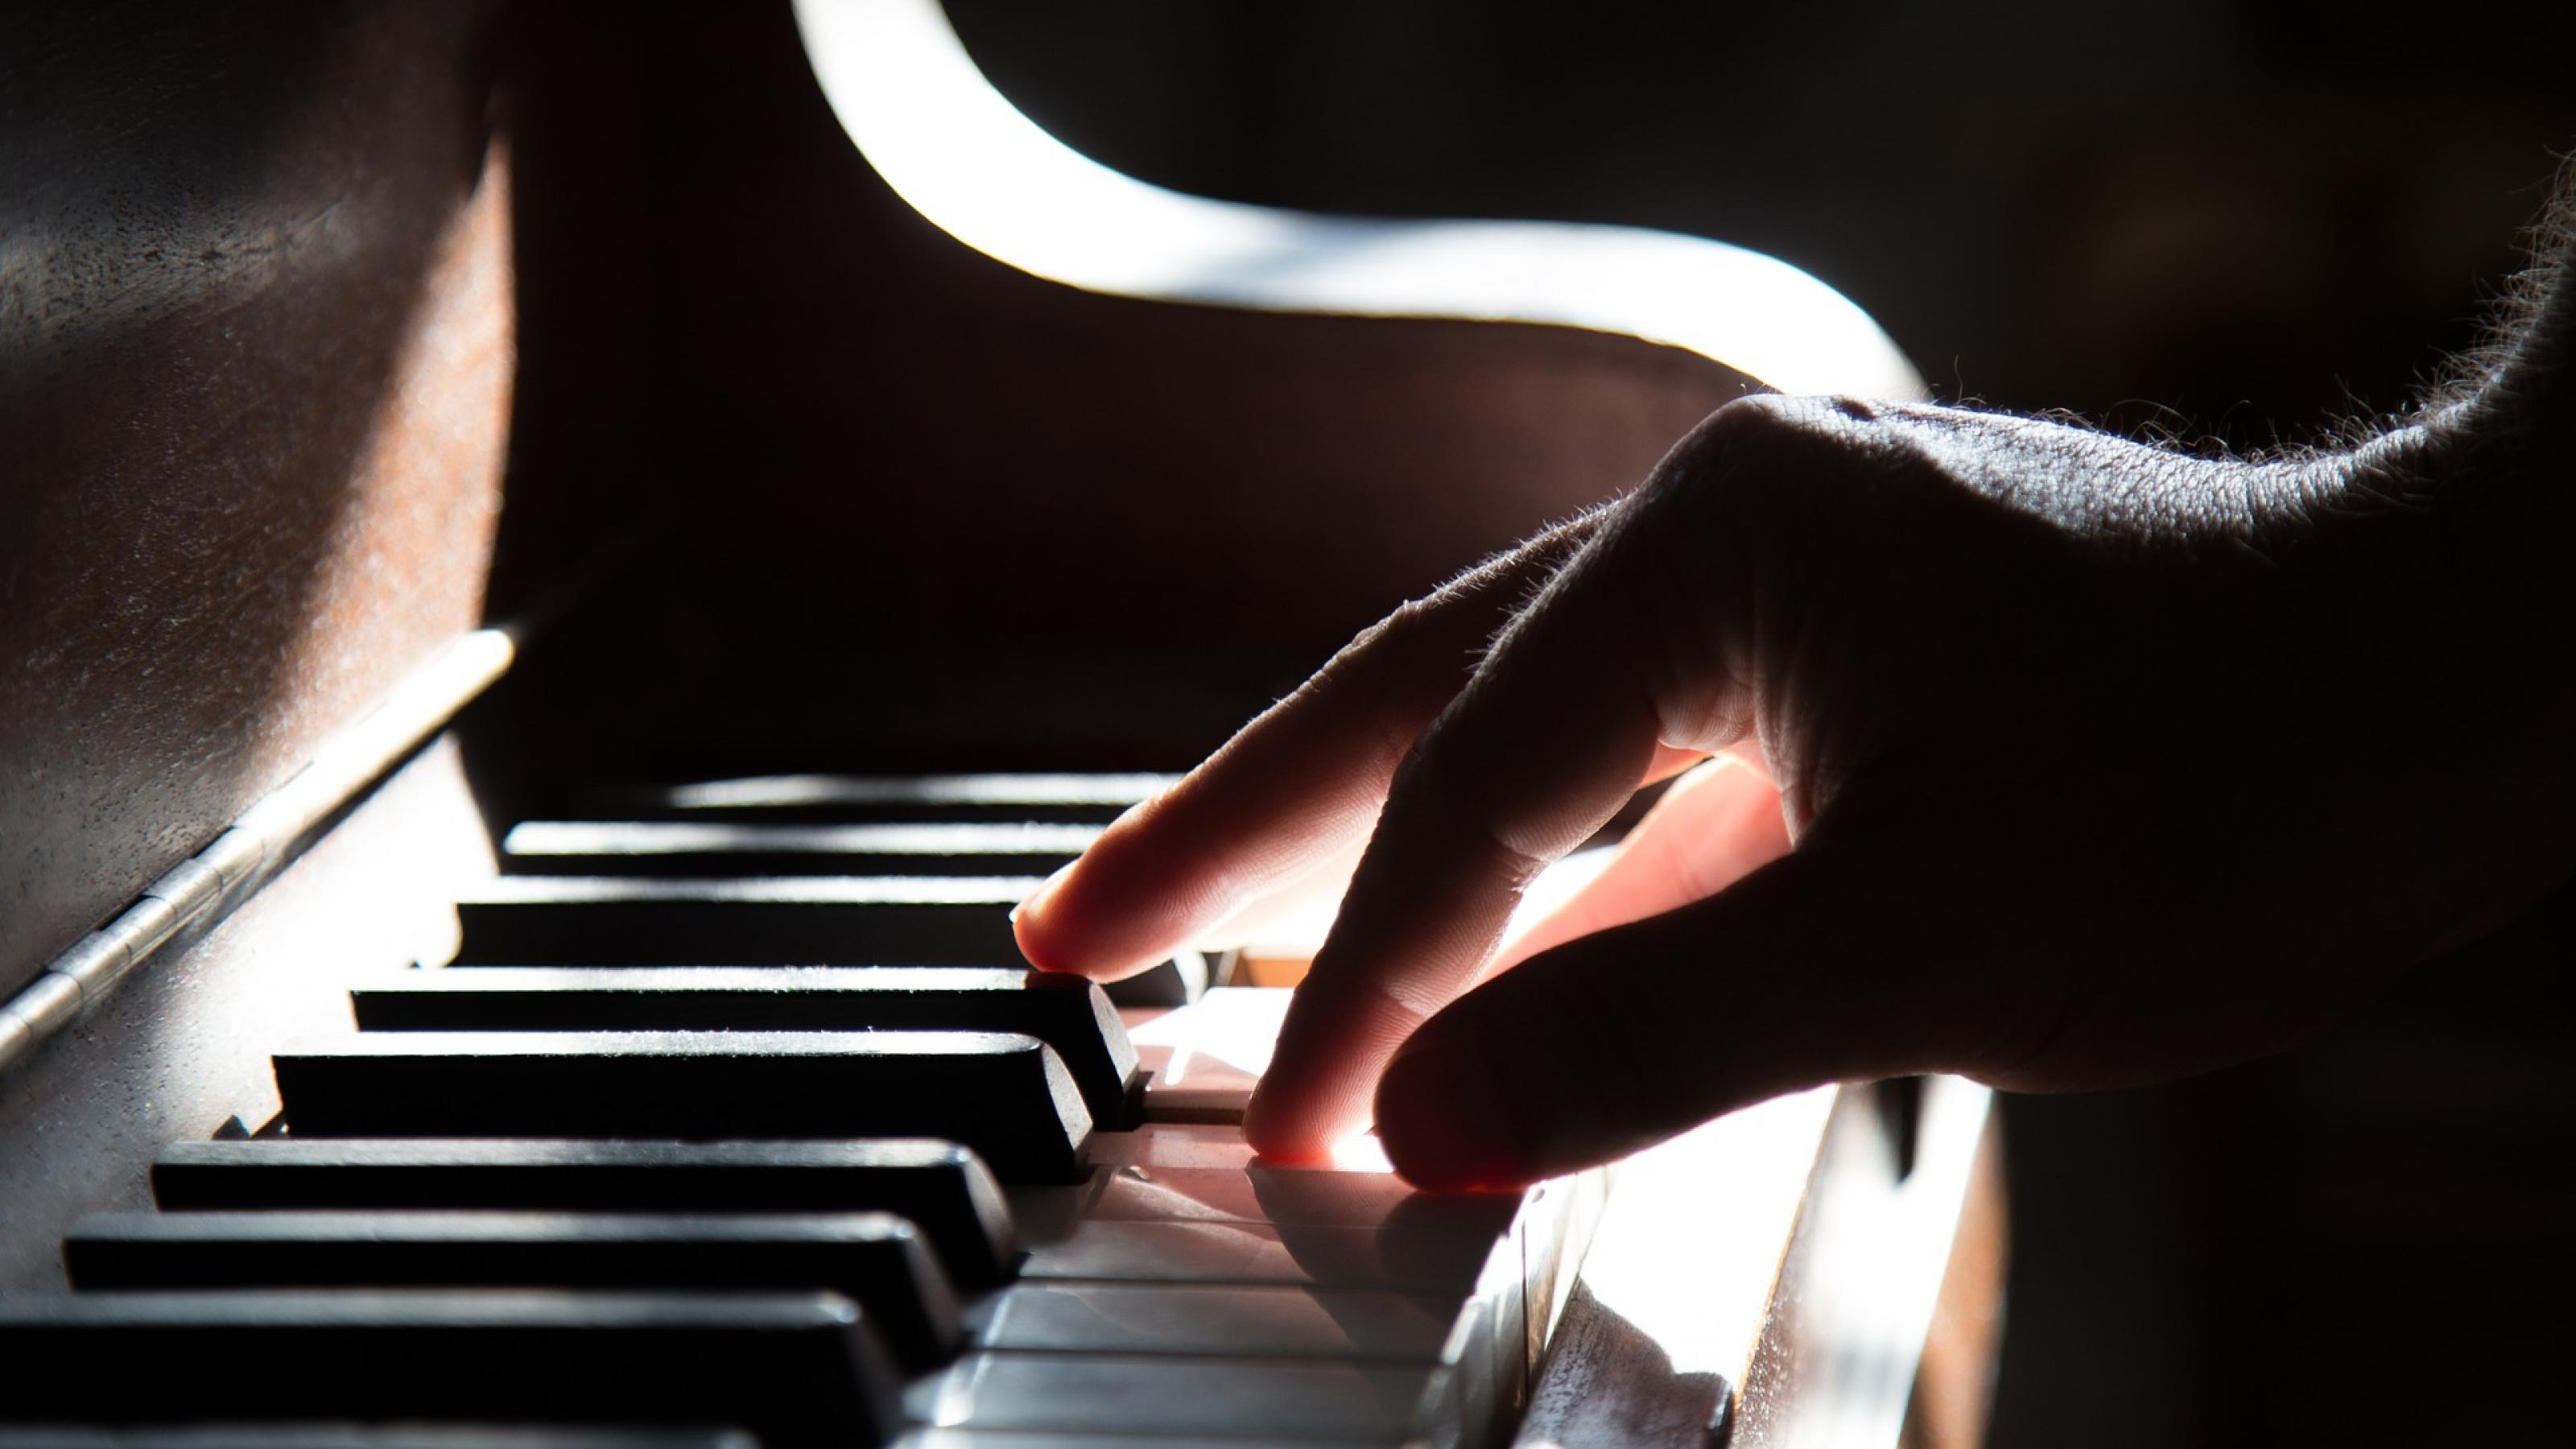 Die Hand eines Mannes spielt sanft die Tasten eine Klaviers.